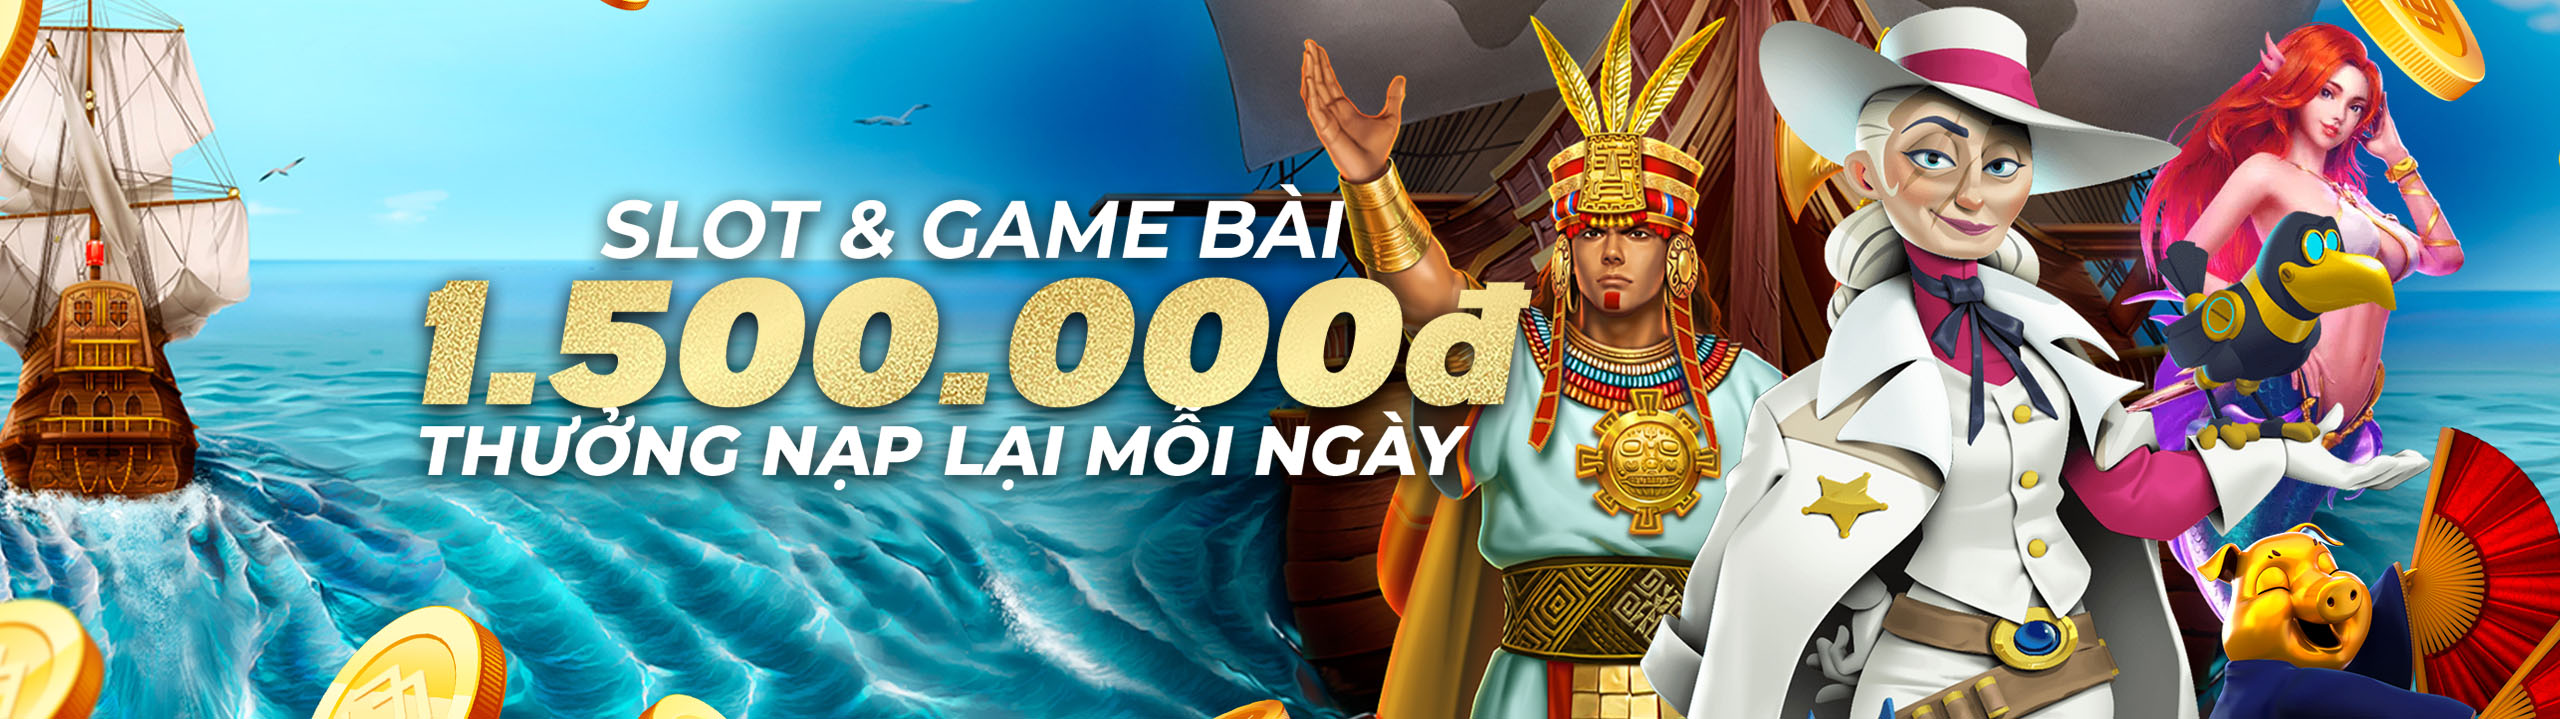 Nạp lại Hàng ngày: Slots & Game bài: 25% lên đến 1.500.000 VND